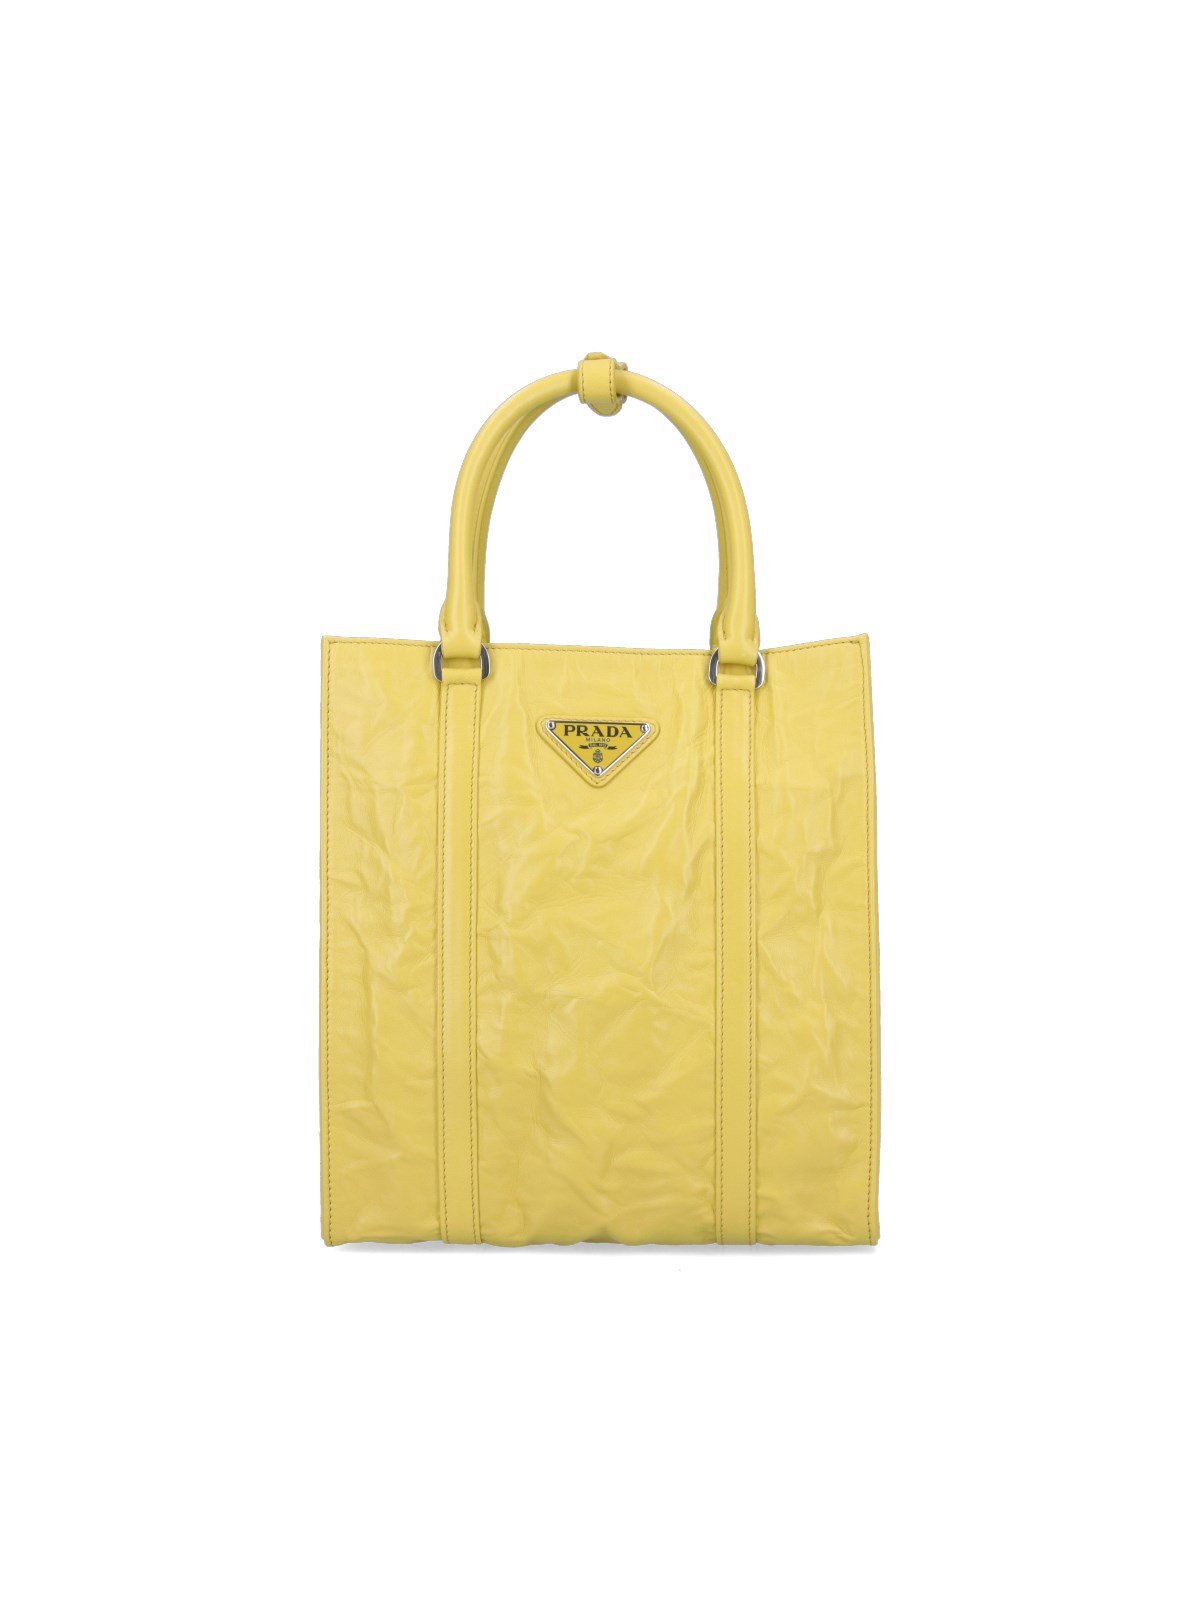 Prada Logo Tote Bag In Yellow